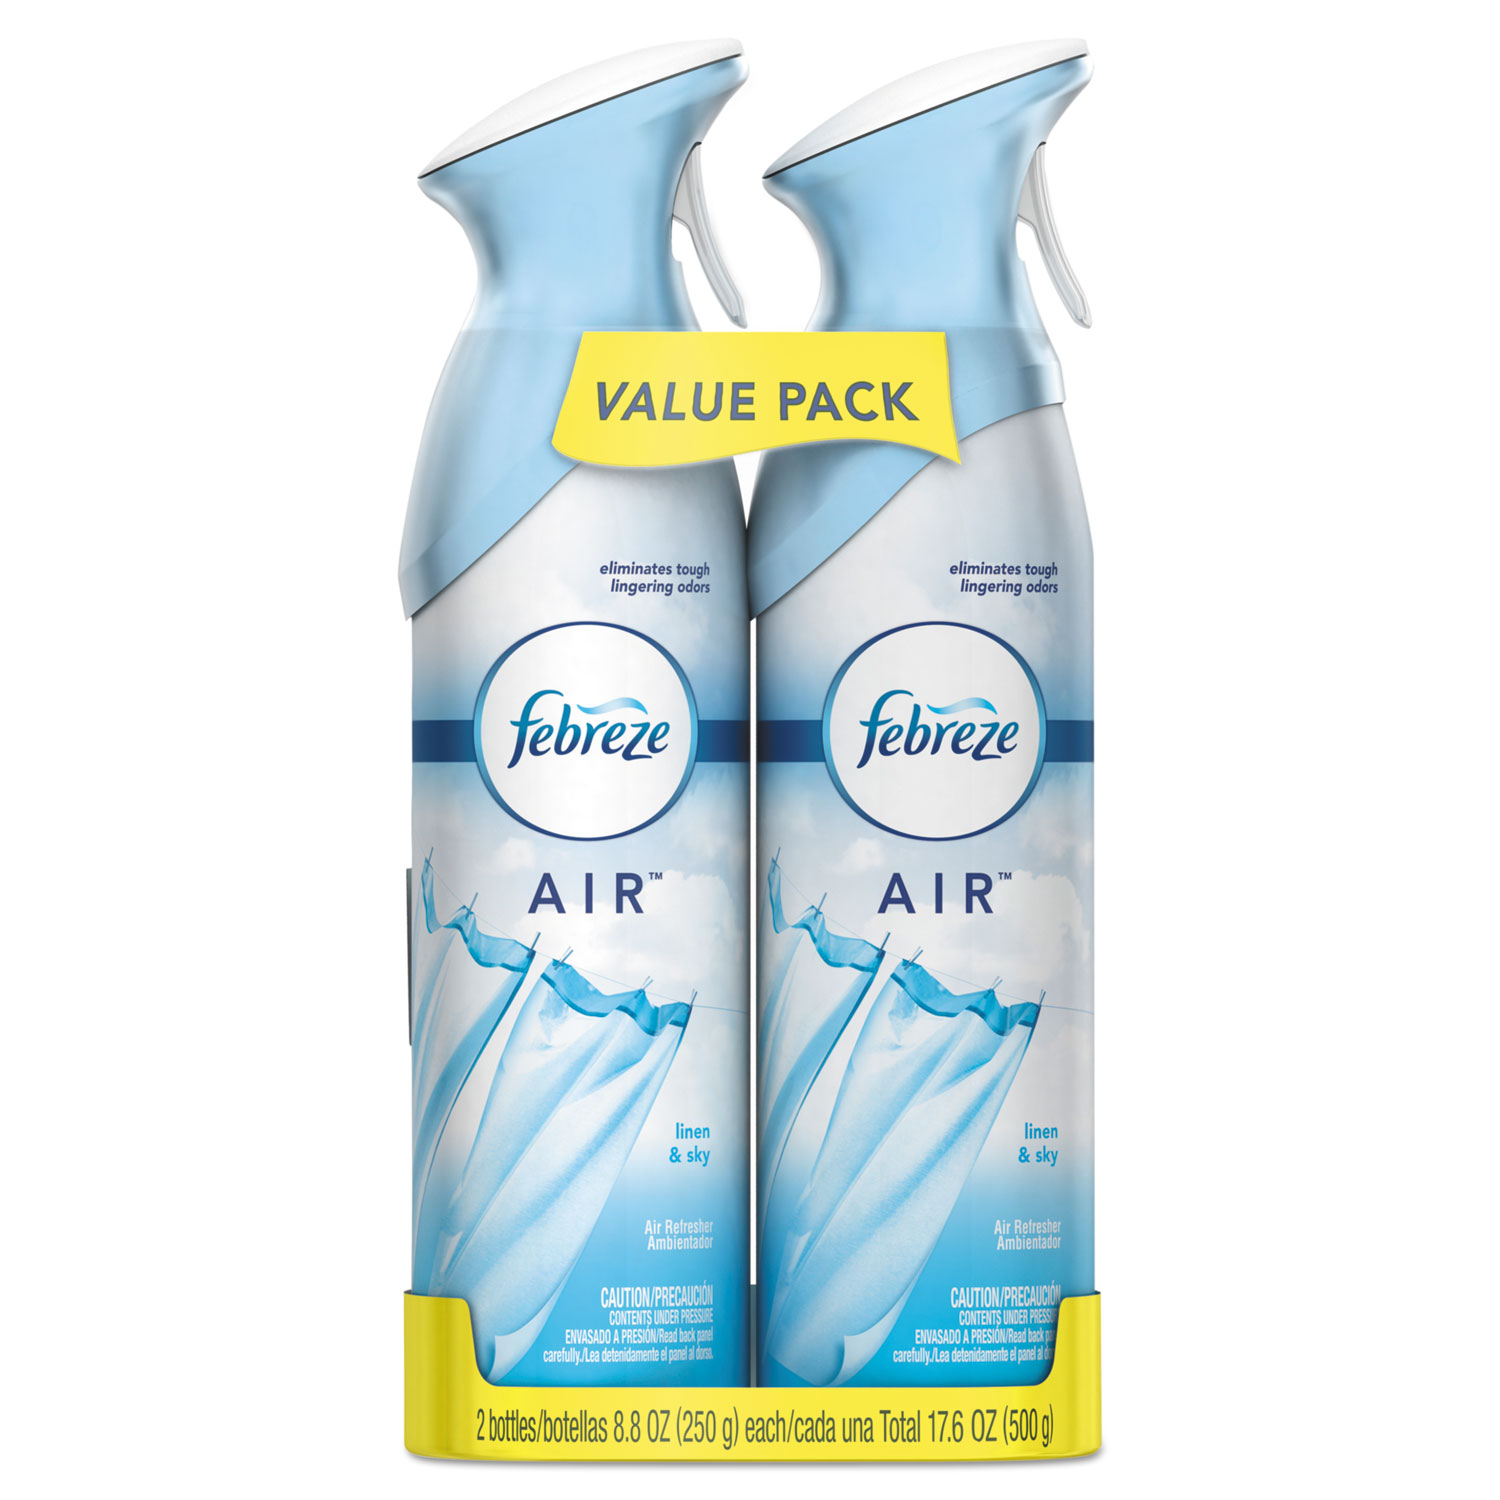 Febreeze AIR Freshner - Linen & Sky, 8.8 oz, 2 Pack, 6/Case